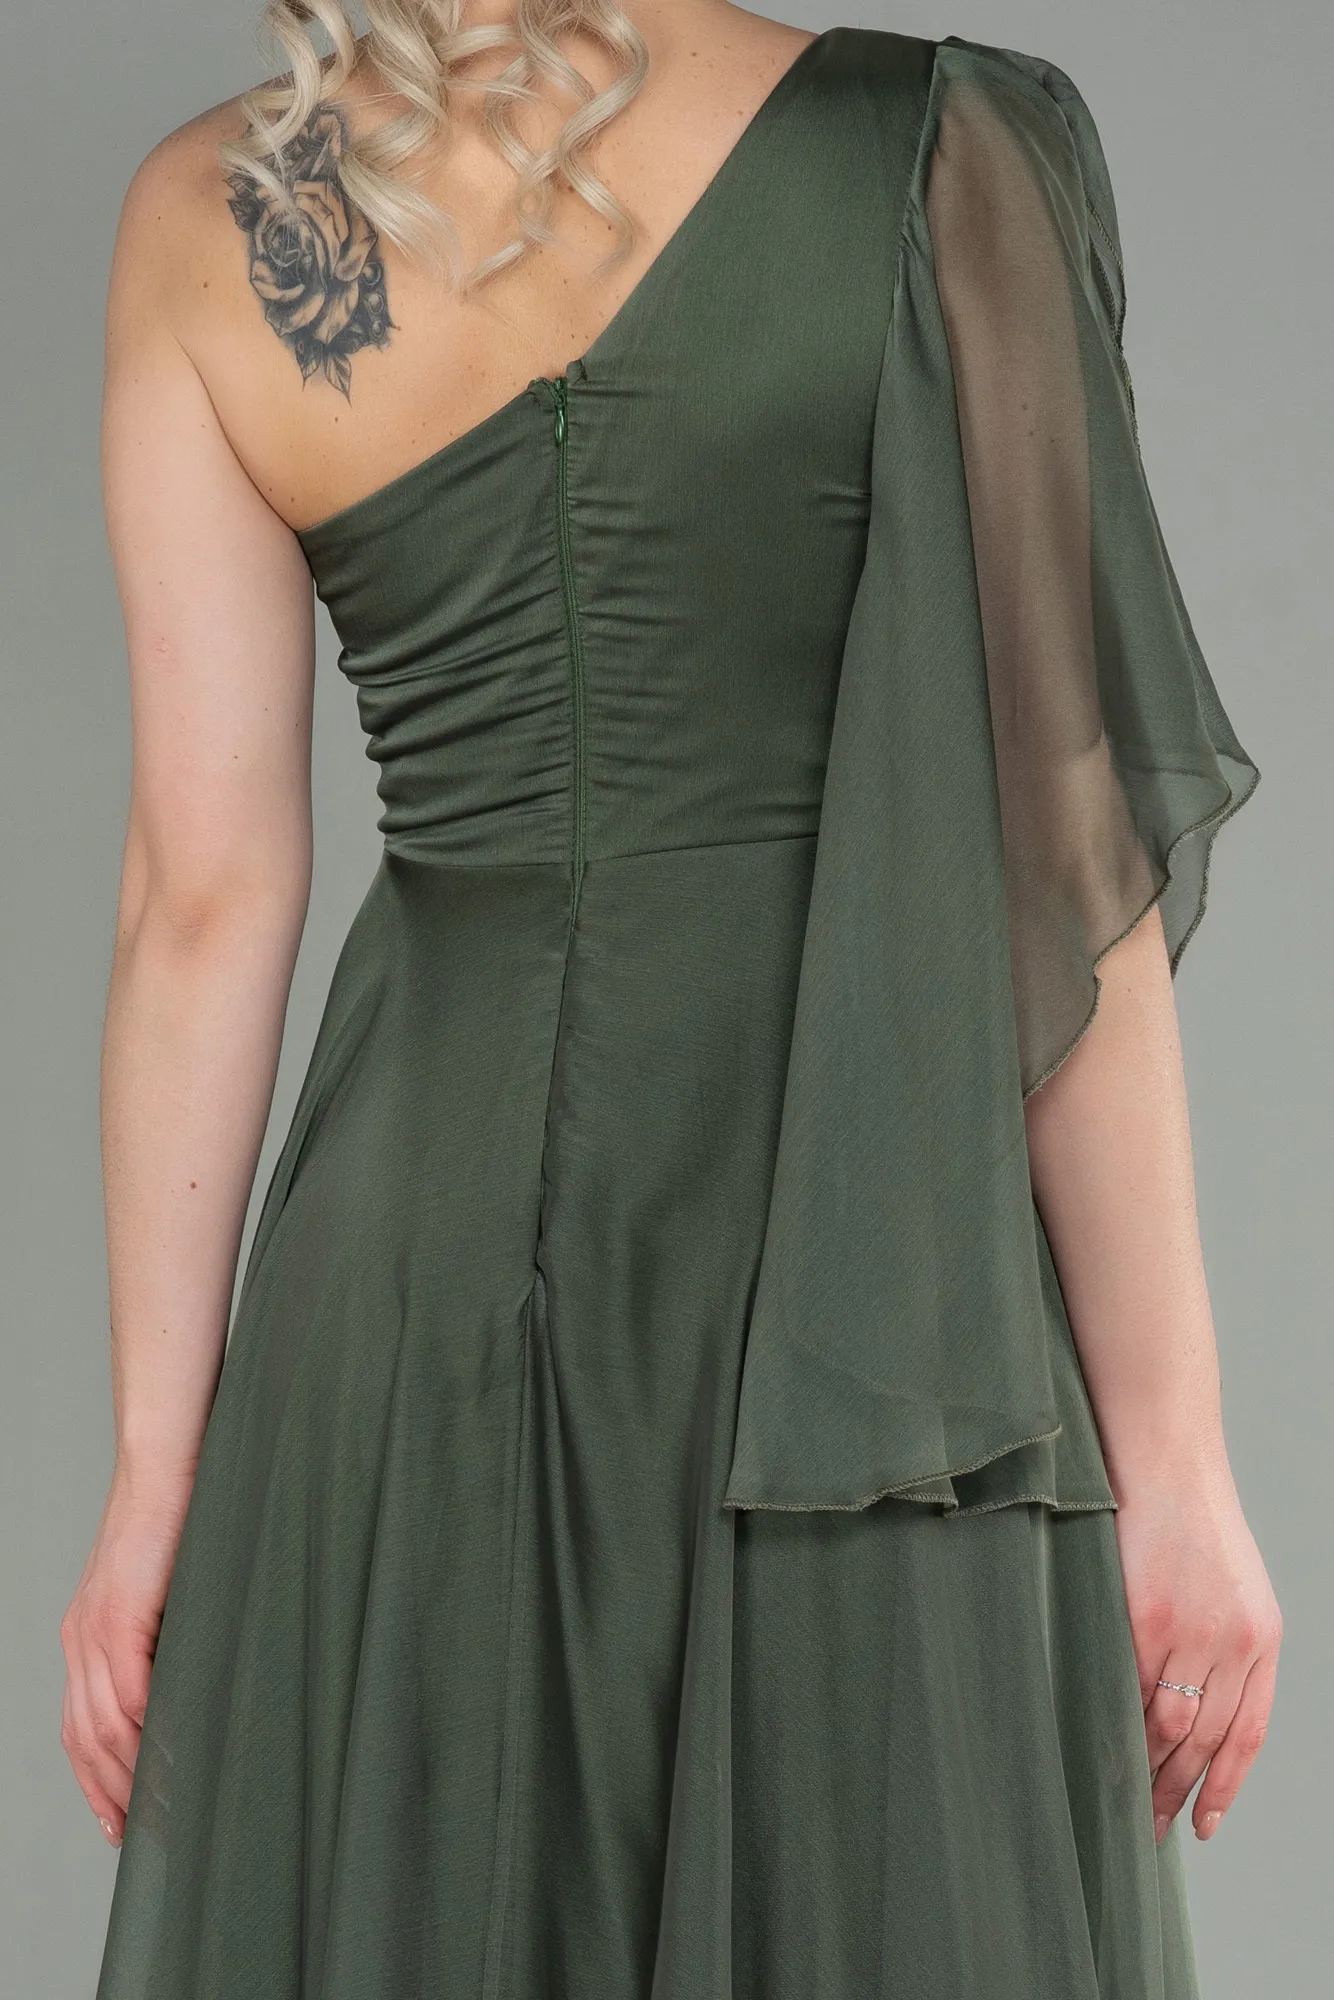 Oil Green-Long Chiffon Evening Dress ABU3449